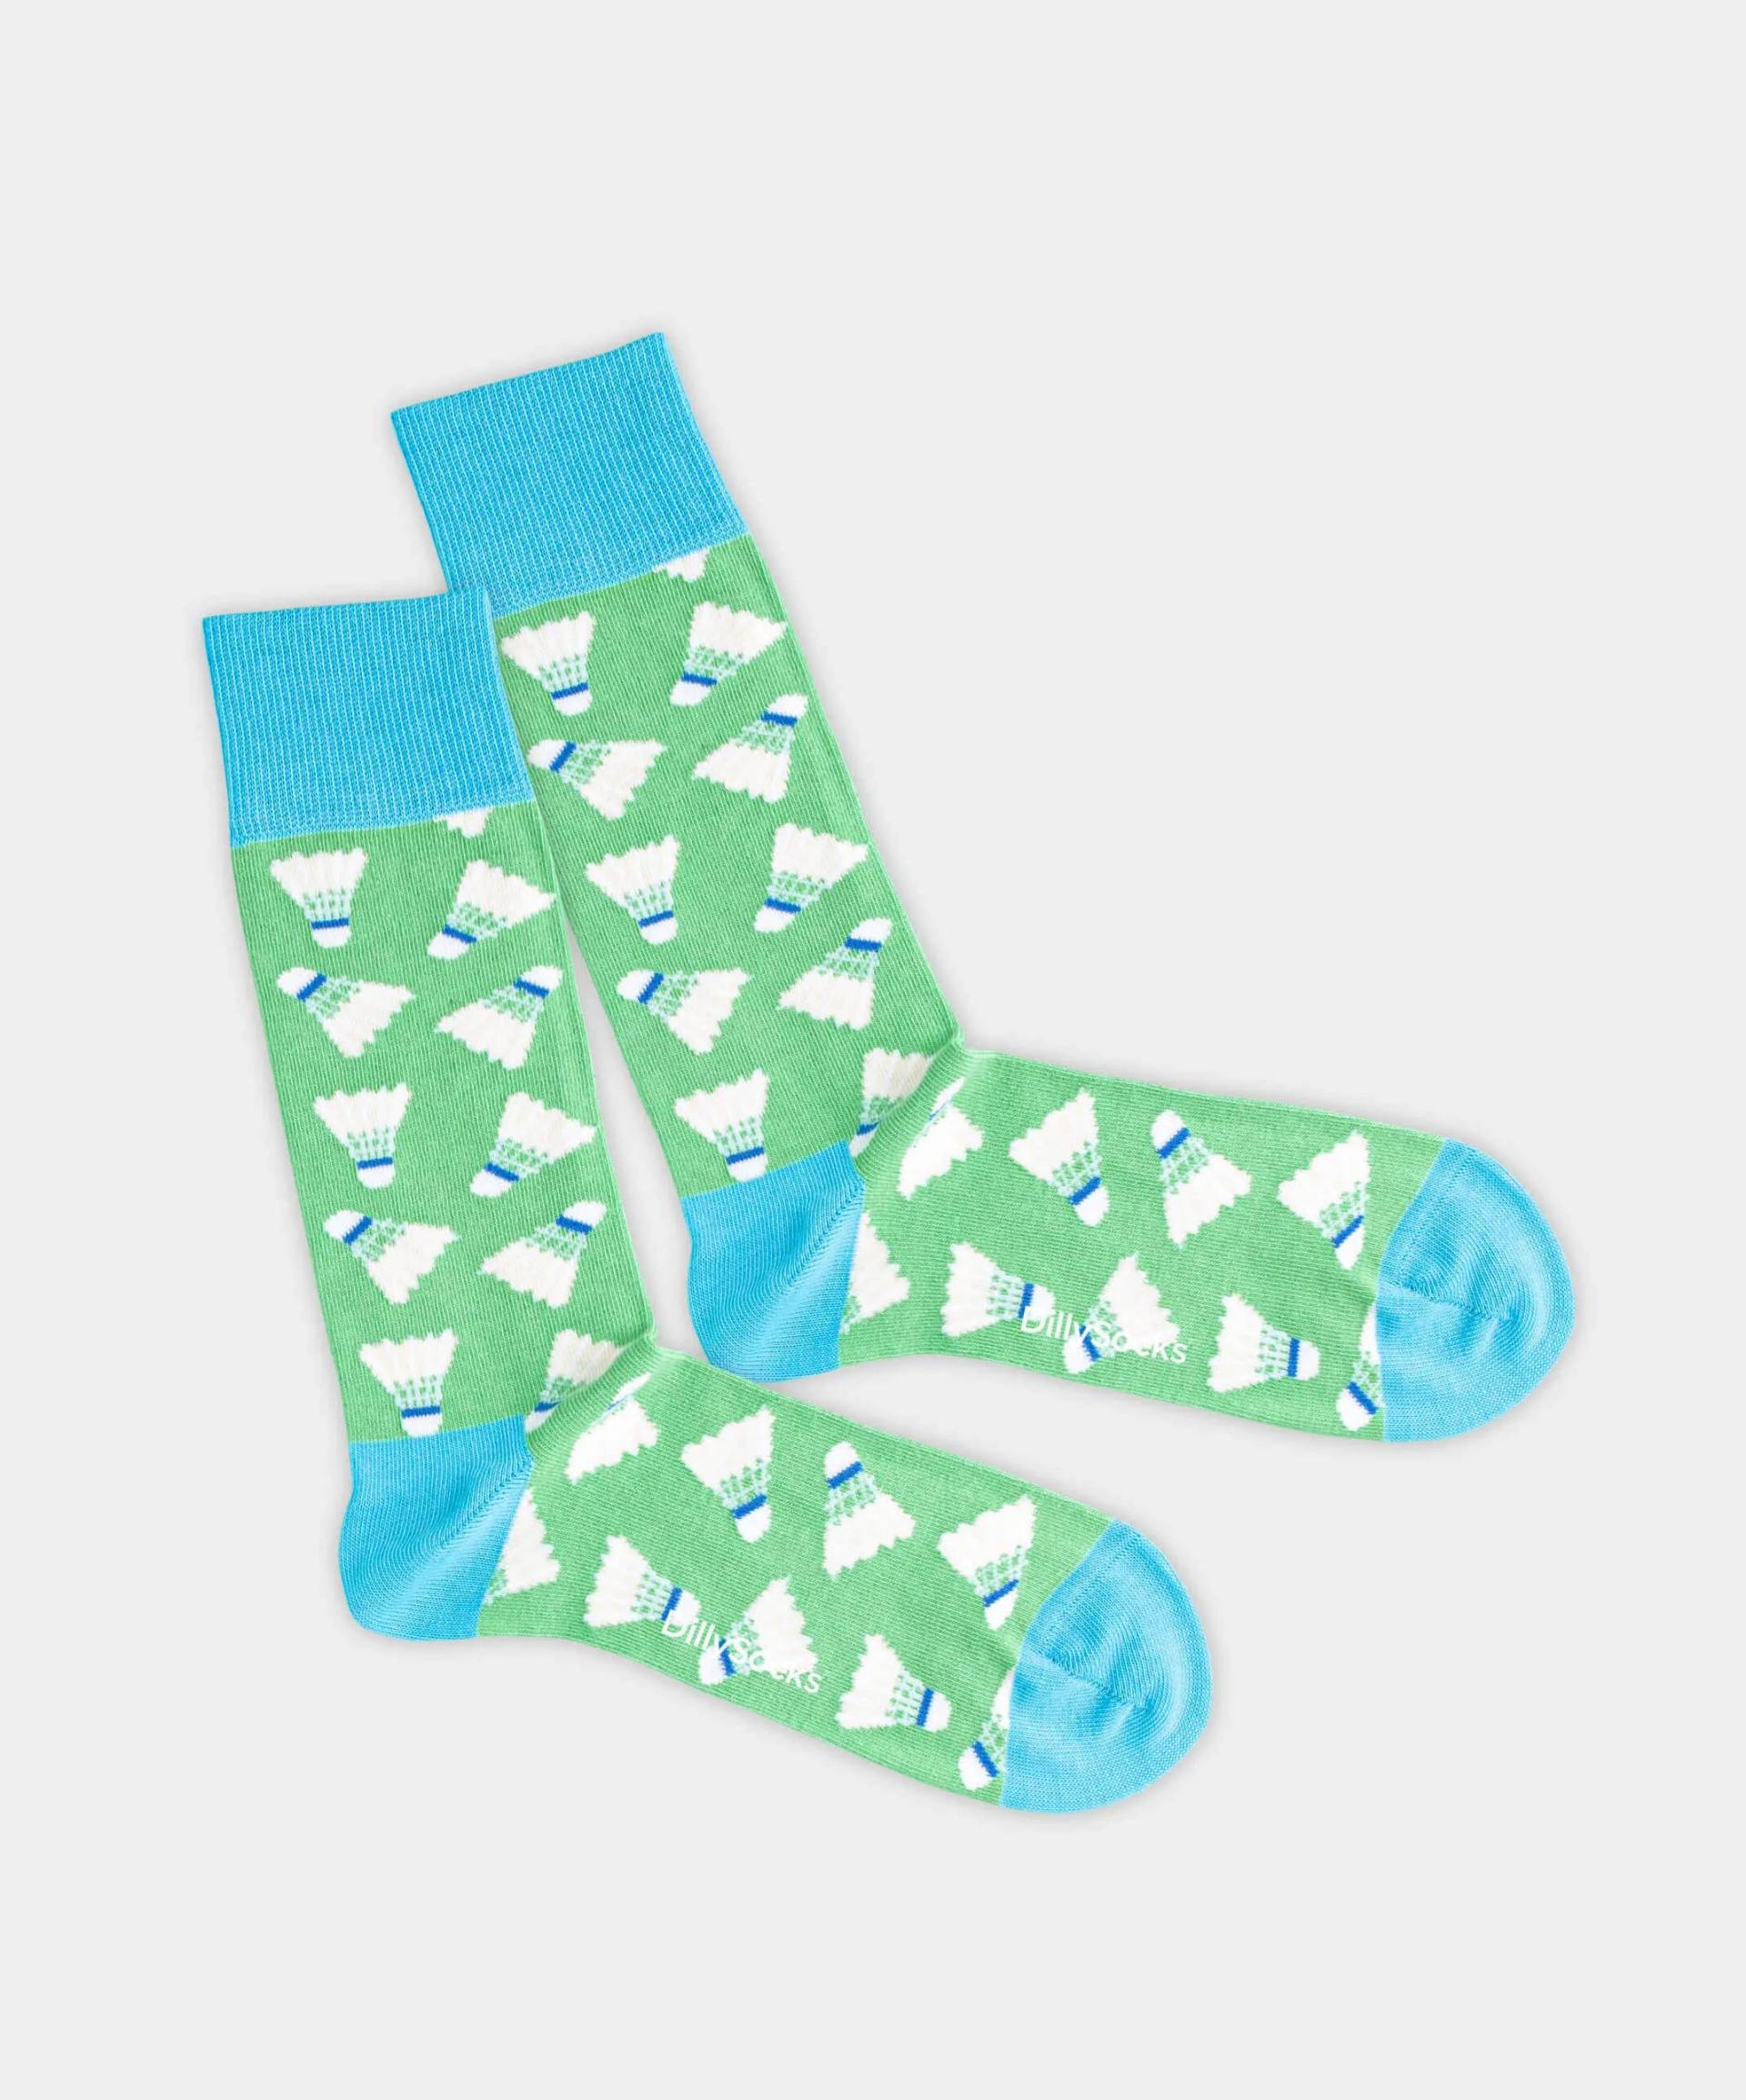 - Socken in Grün mit Sport Motiv/Muster von DillySocks